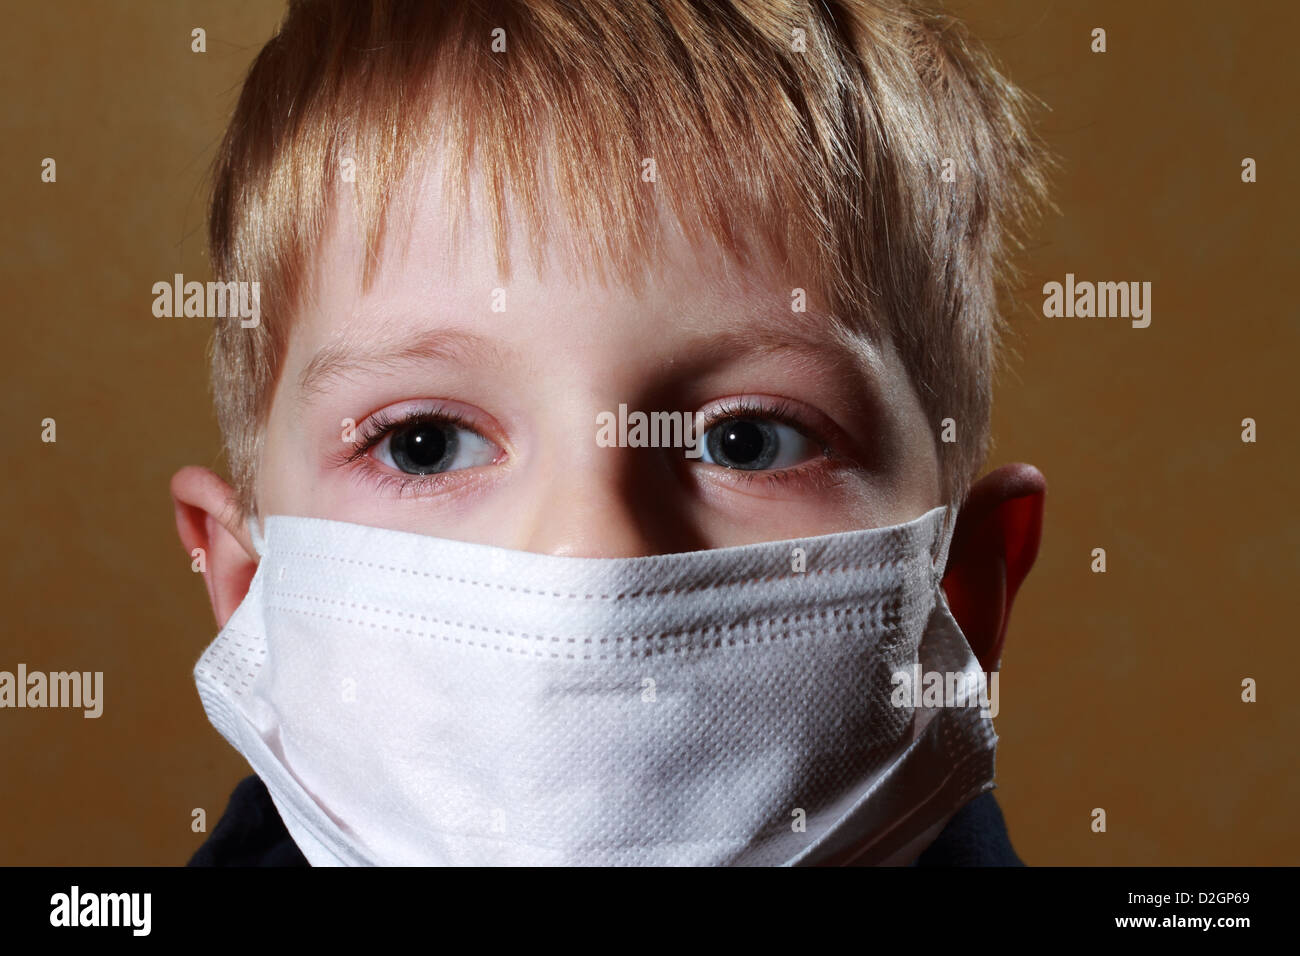 Petit garçon en médecine healthcare mask Banque D'Images